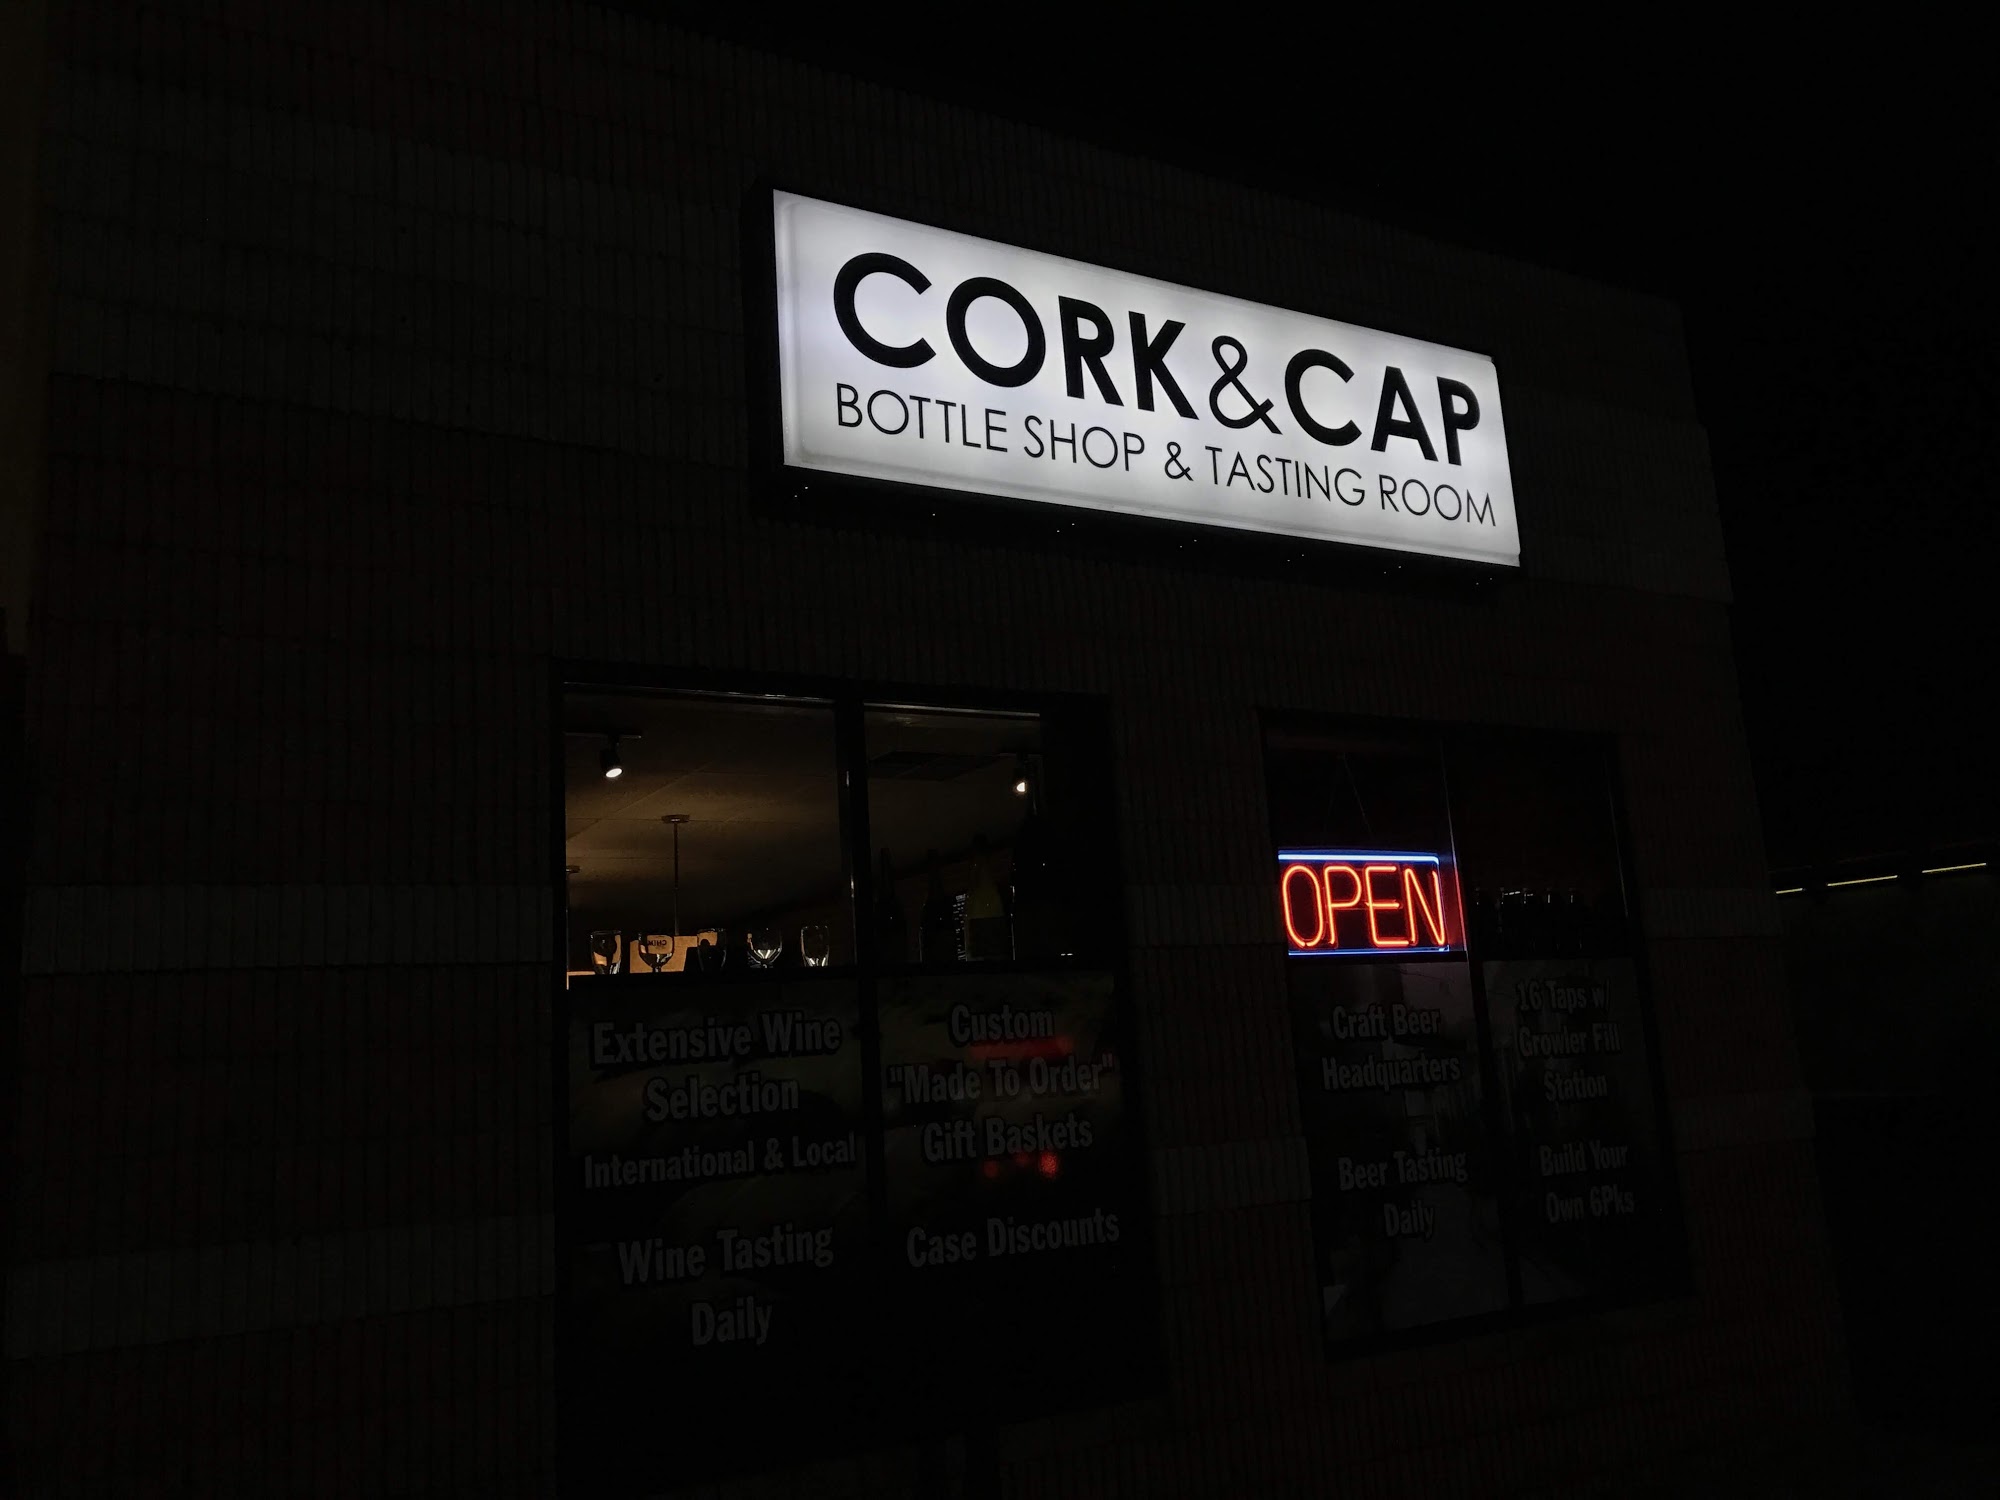 Cork & Cap Bottle Shop & Tasting Room